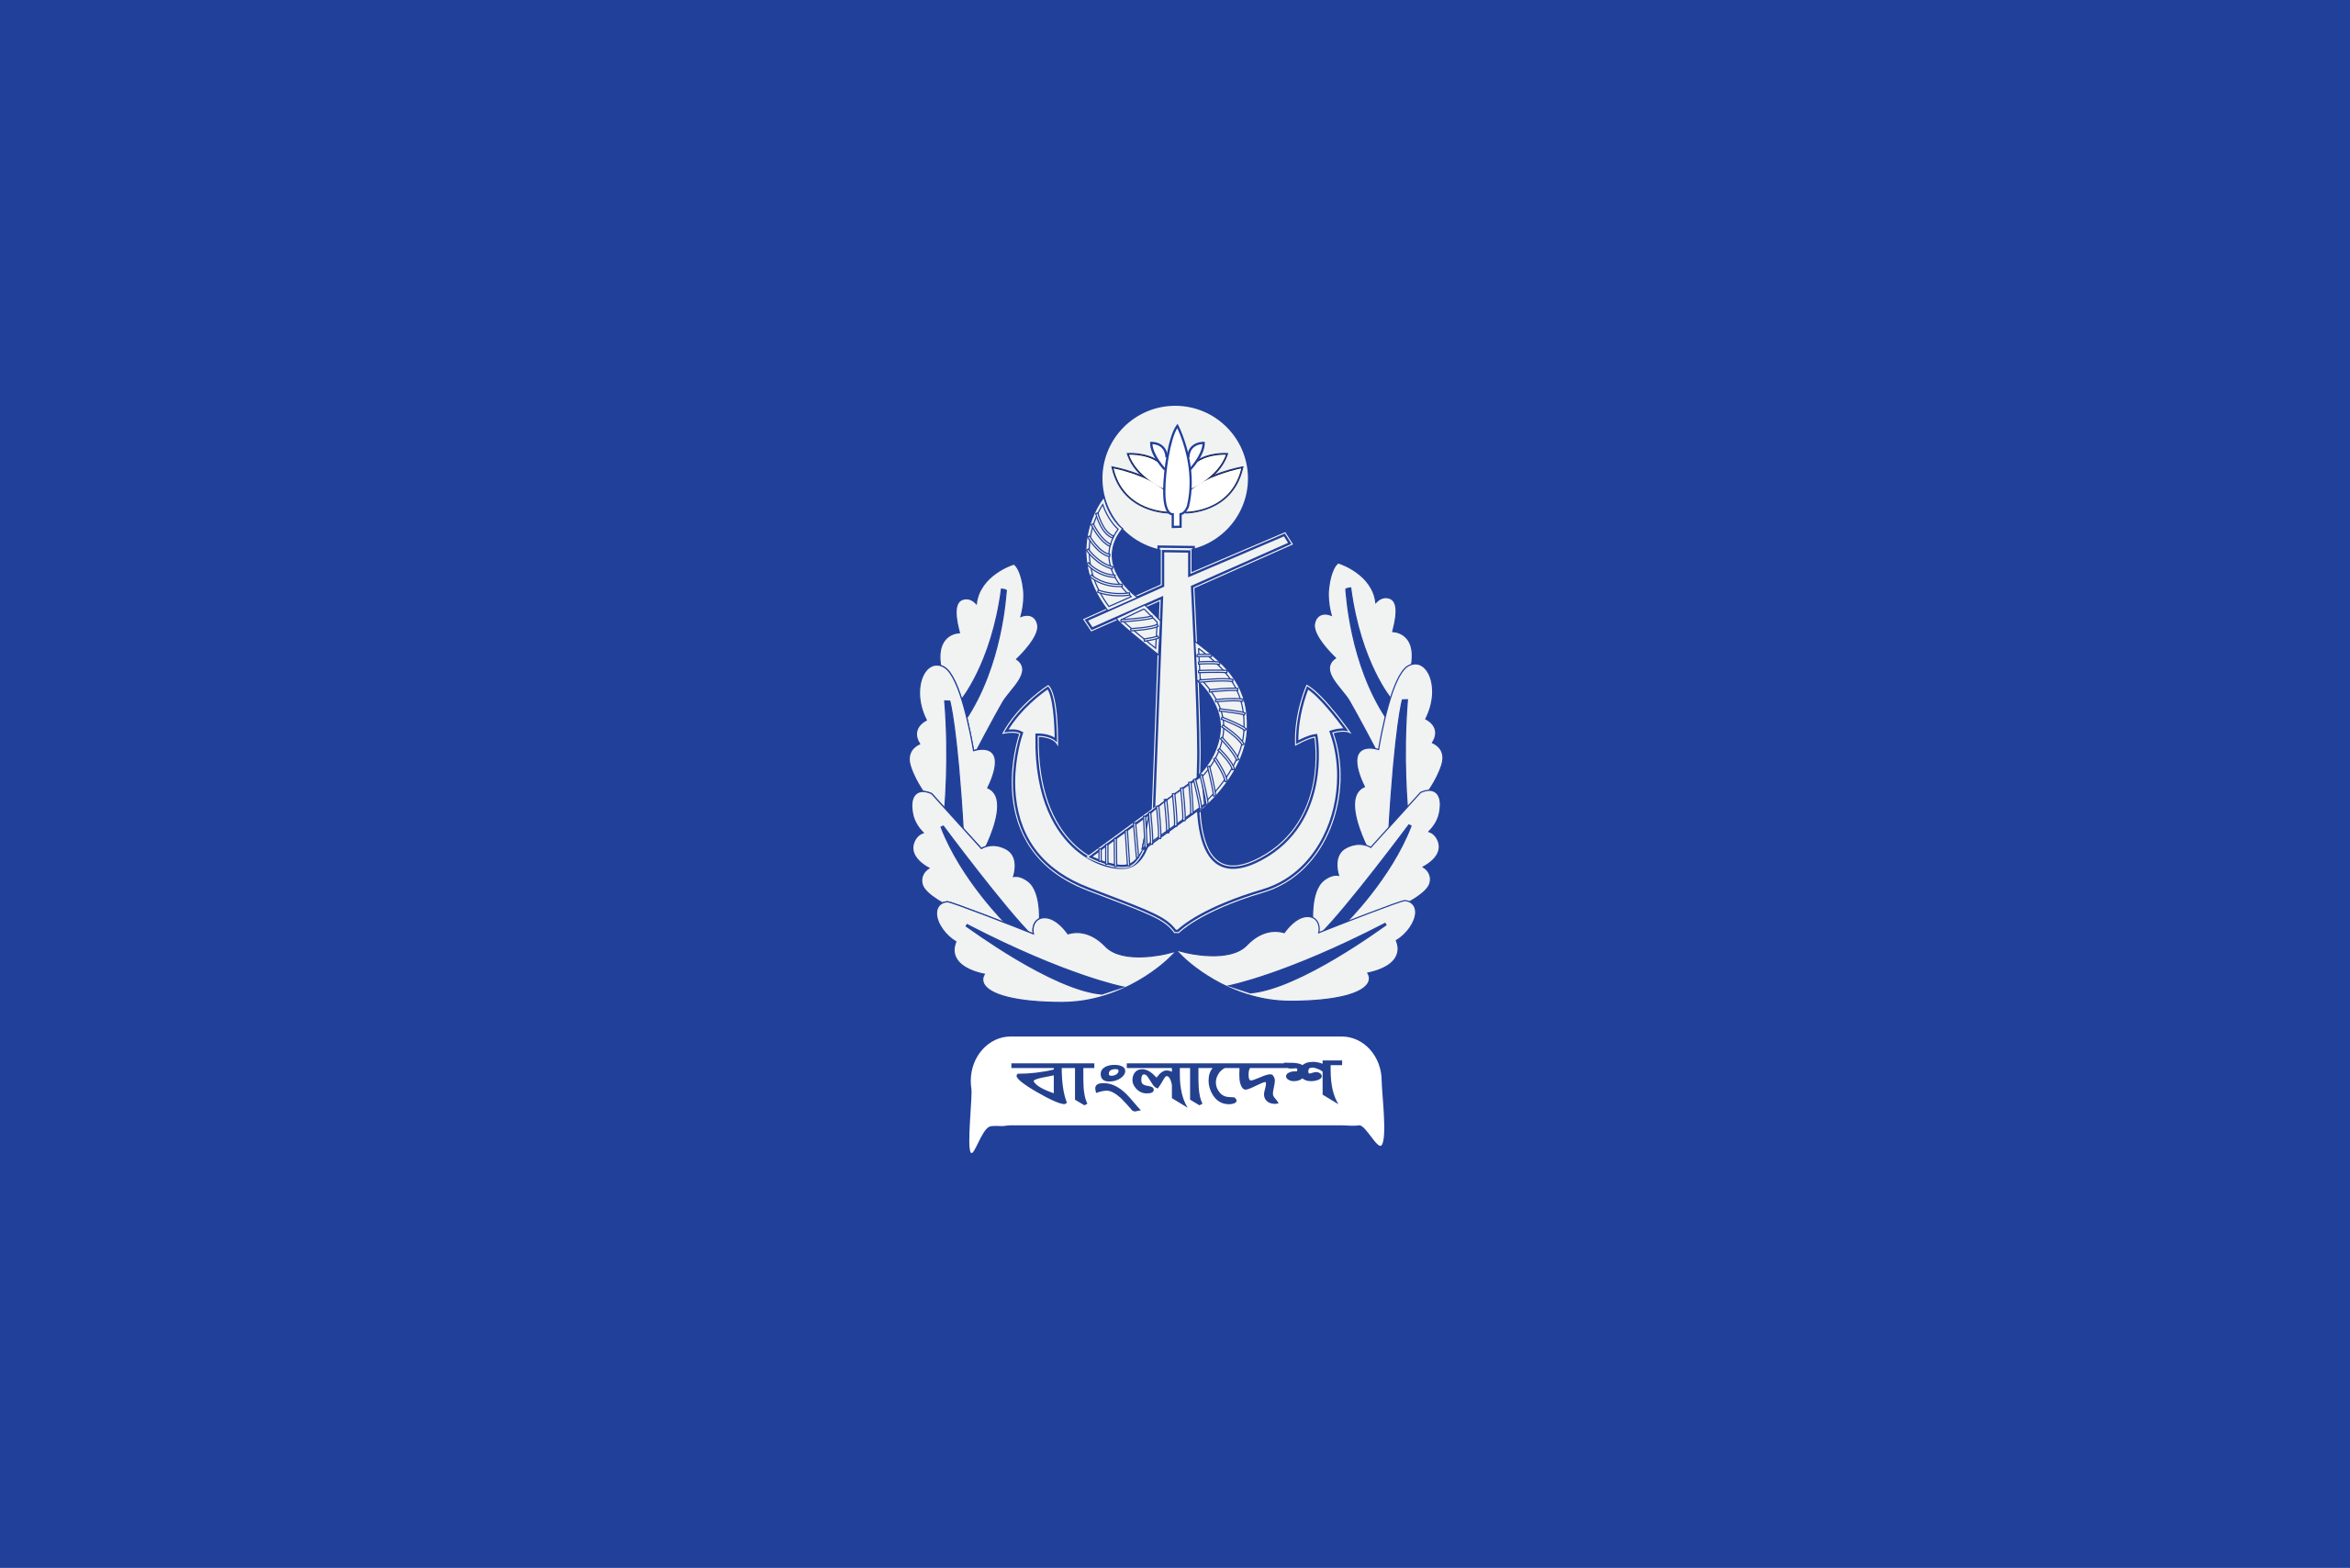 单机游戏 【tno军衔介绍】ban孟加拉国军衔陆军军旗: 陆军徽章: 海军